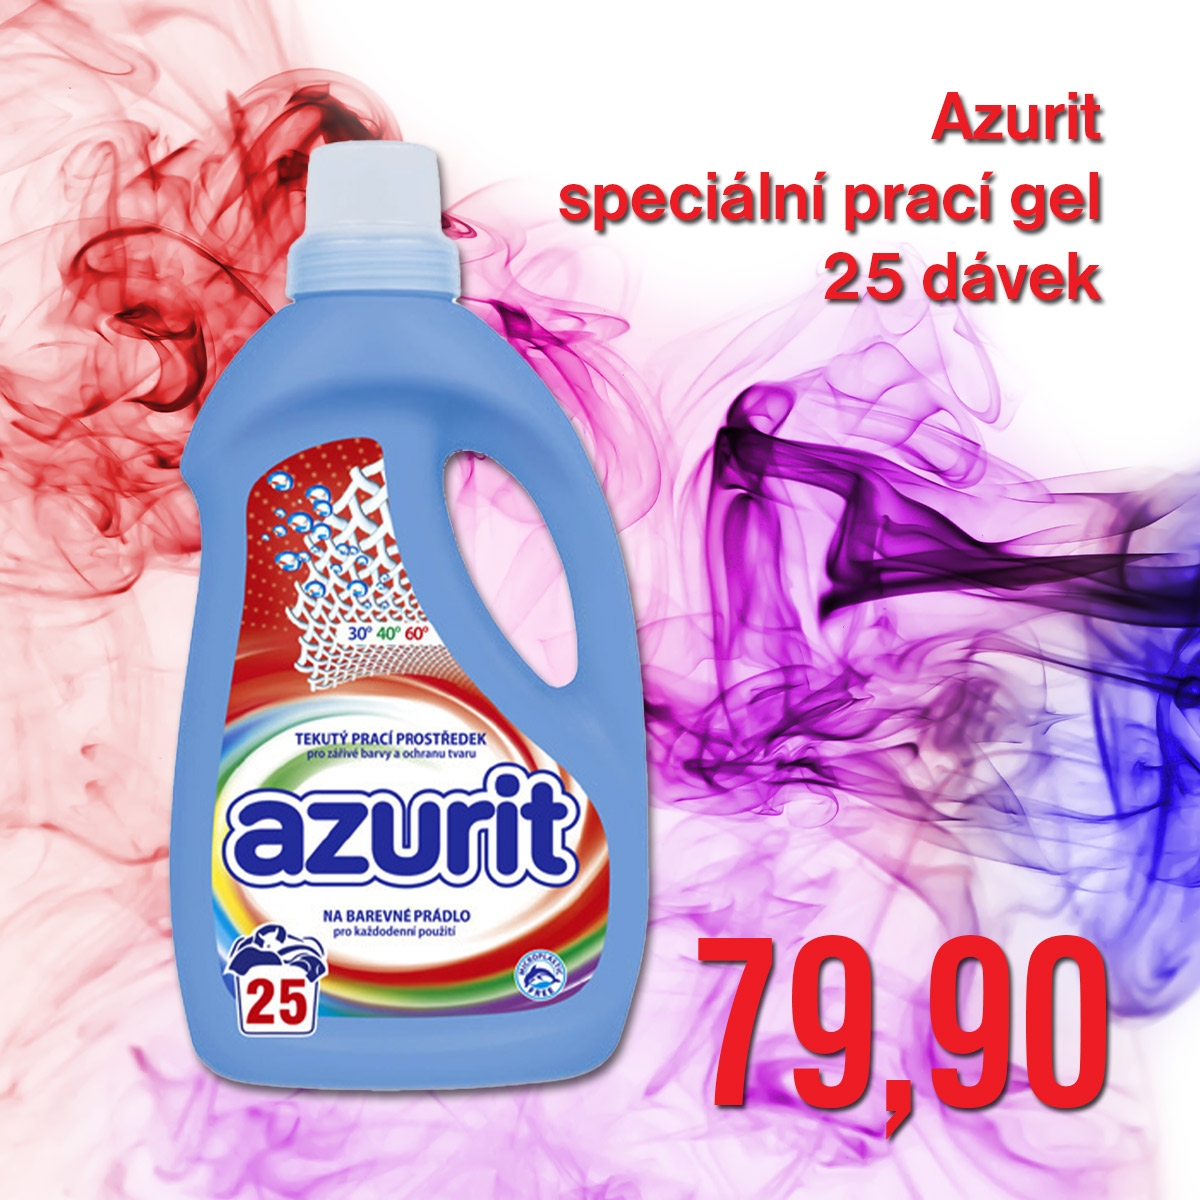 Azurit speciální prací gel 1 l=25 dávek